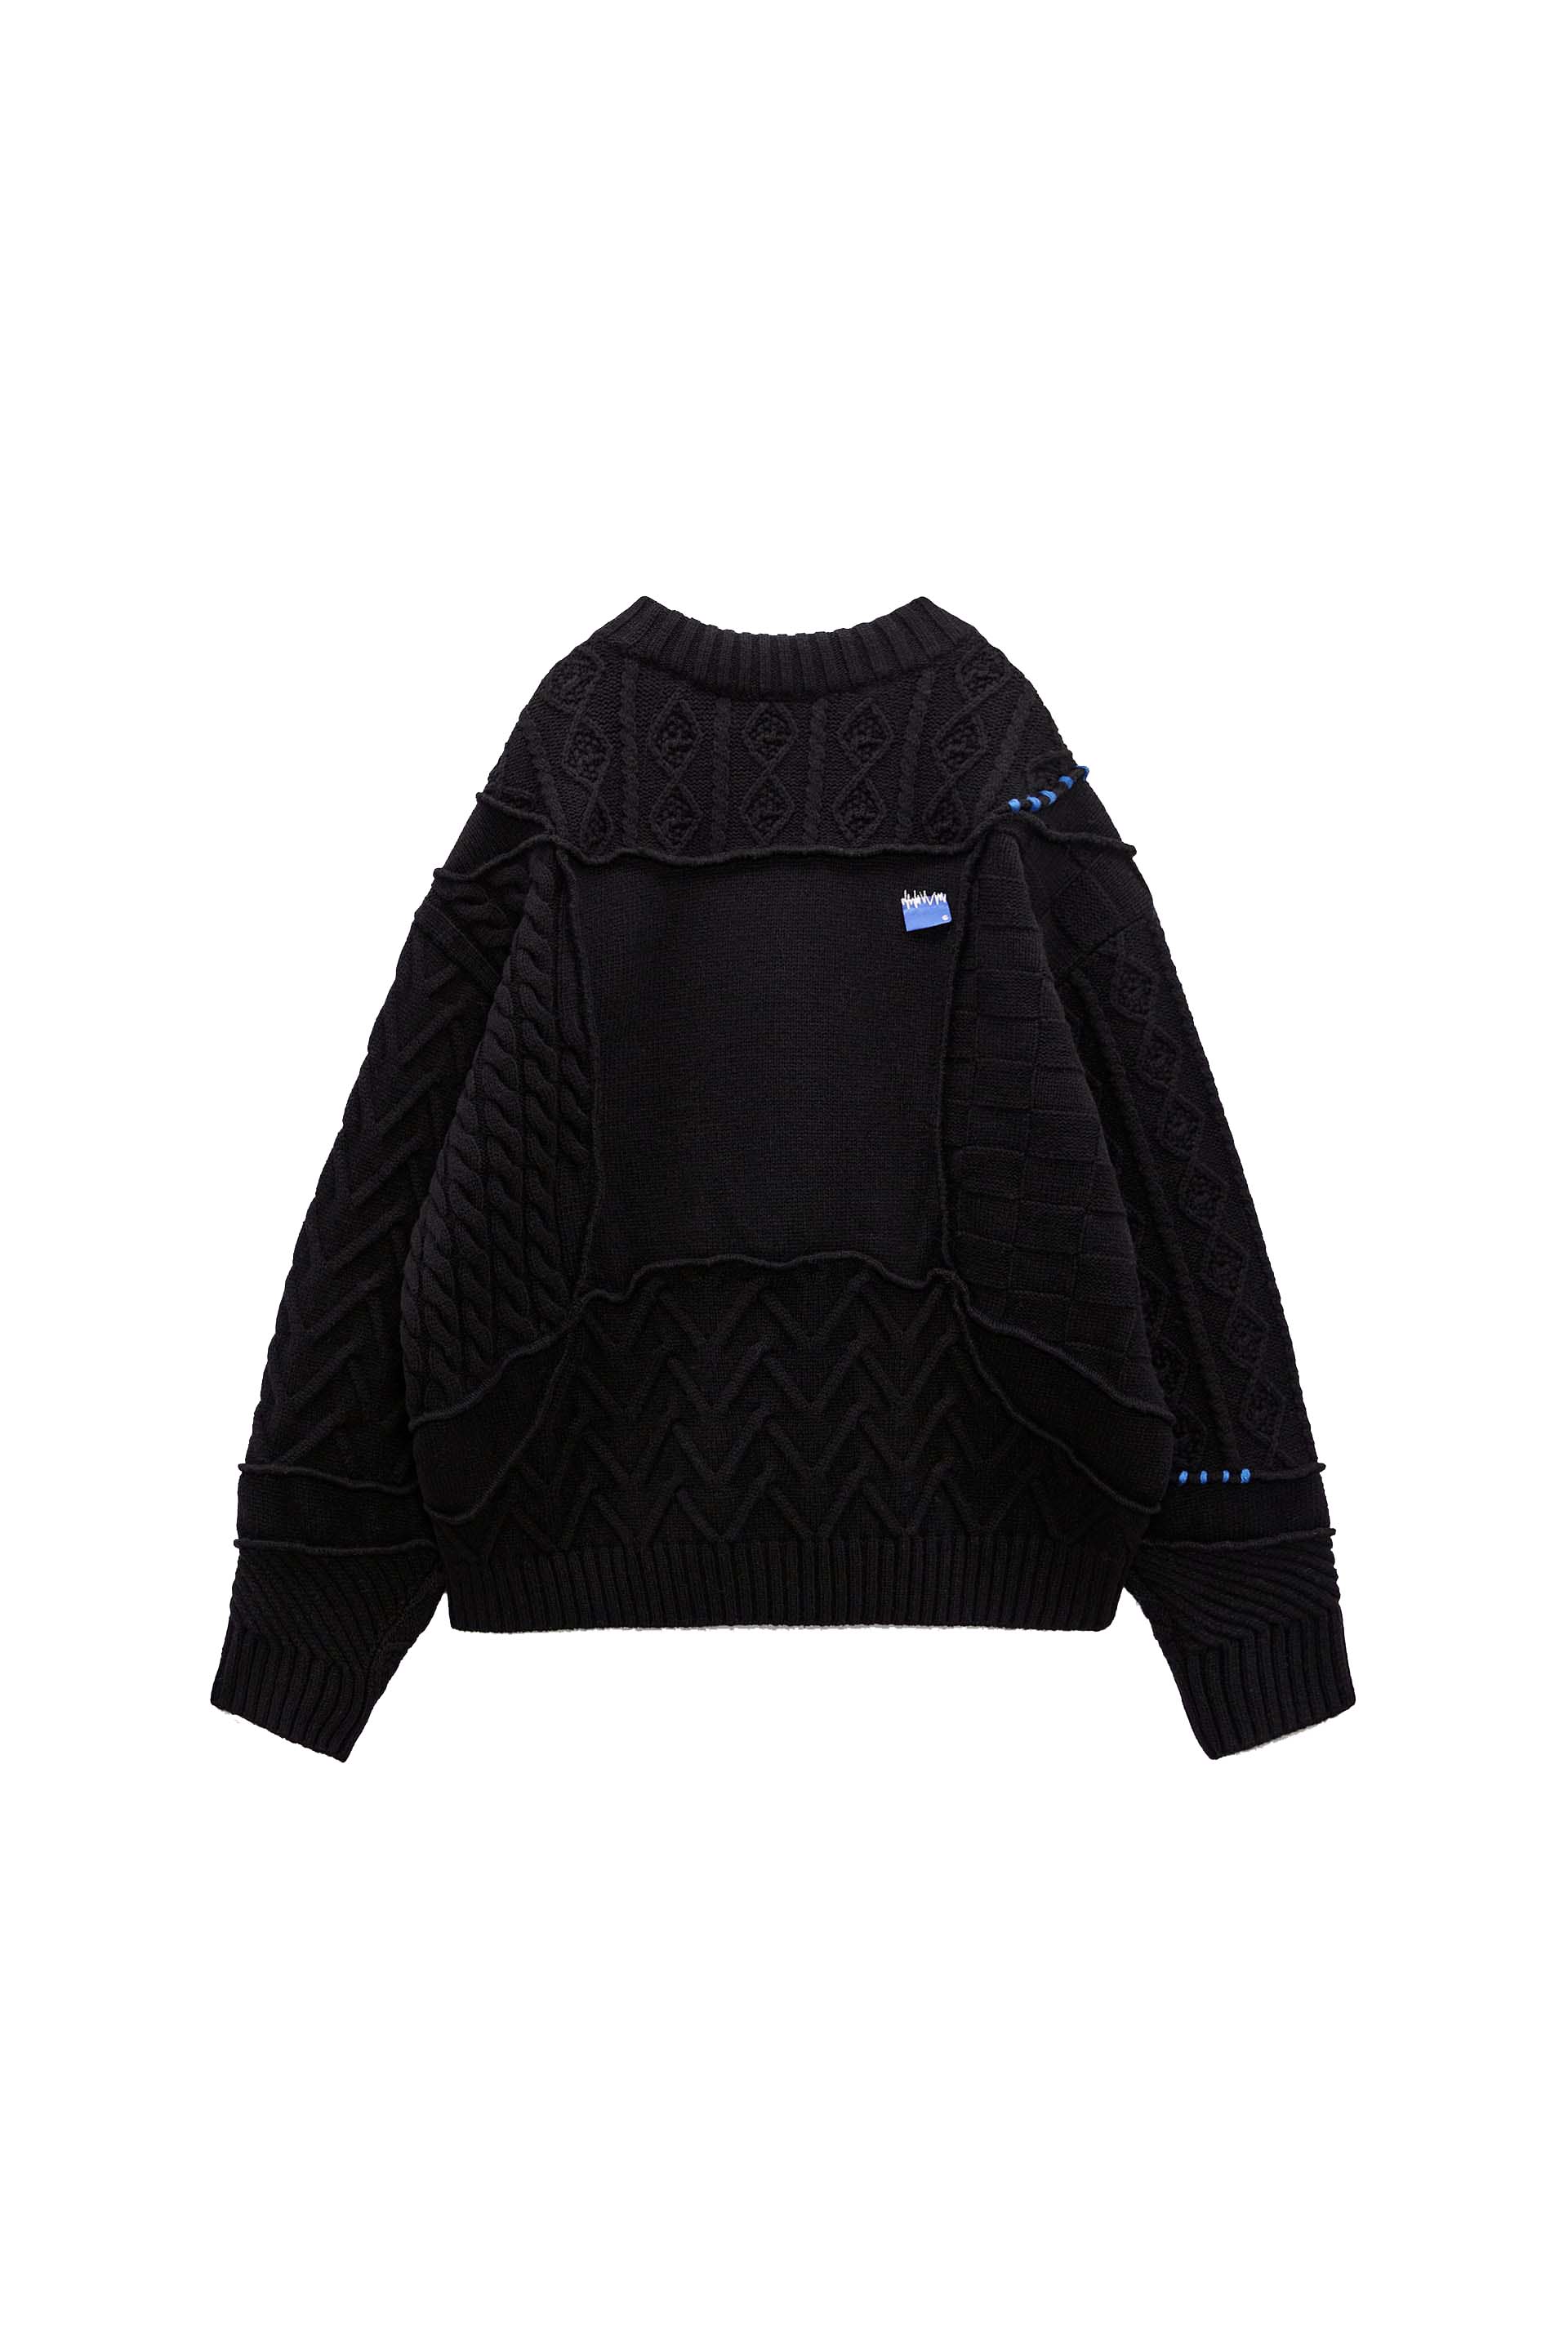 Ader Error Frema striped-knit buttoned jumper - Black